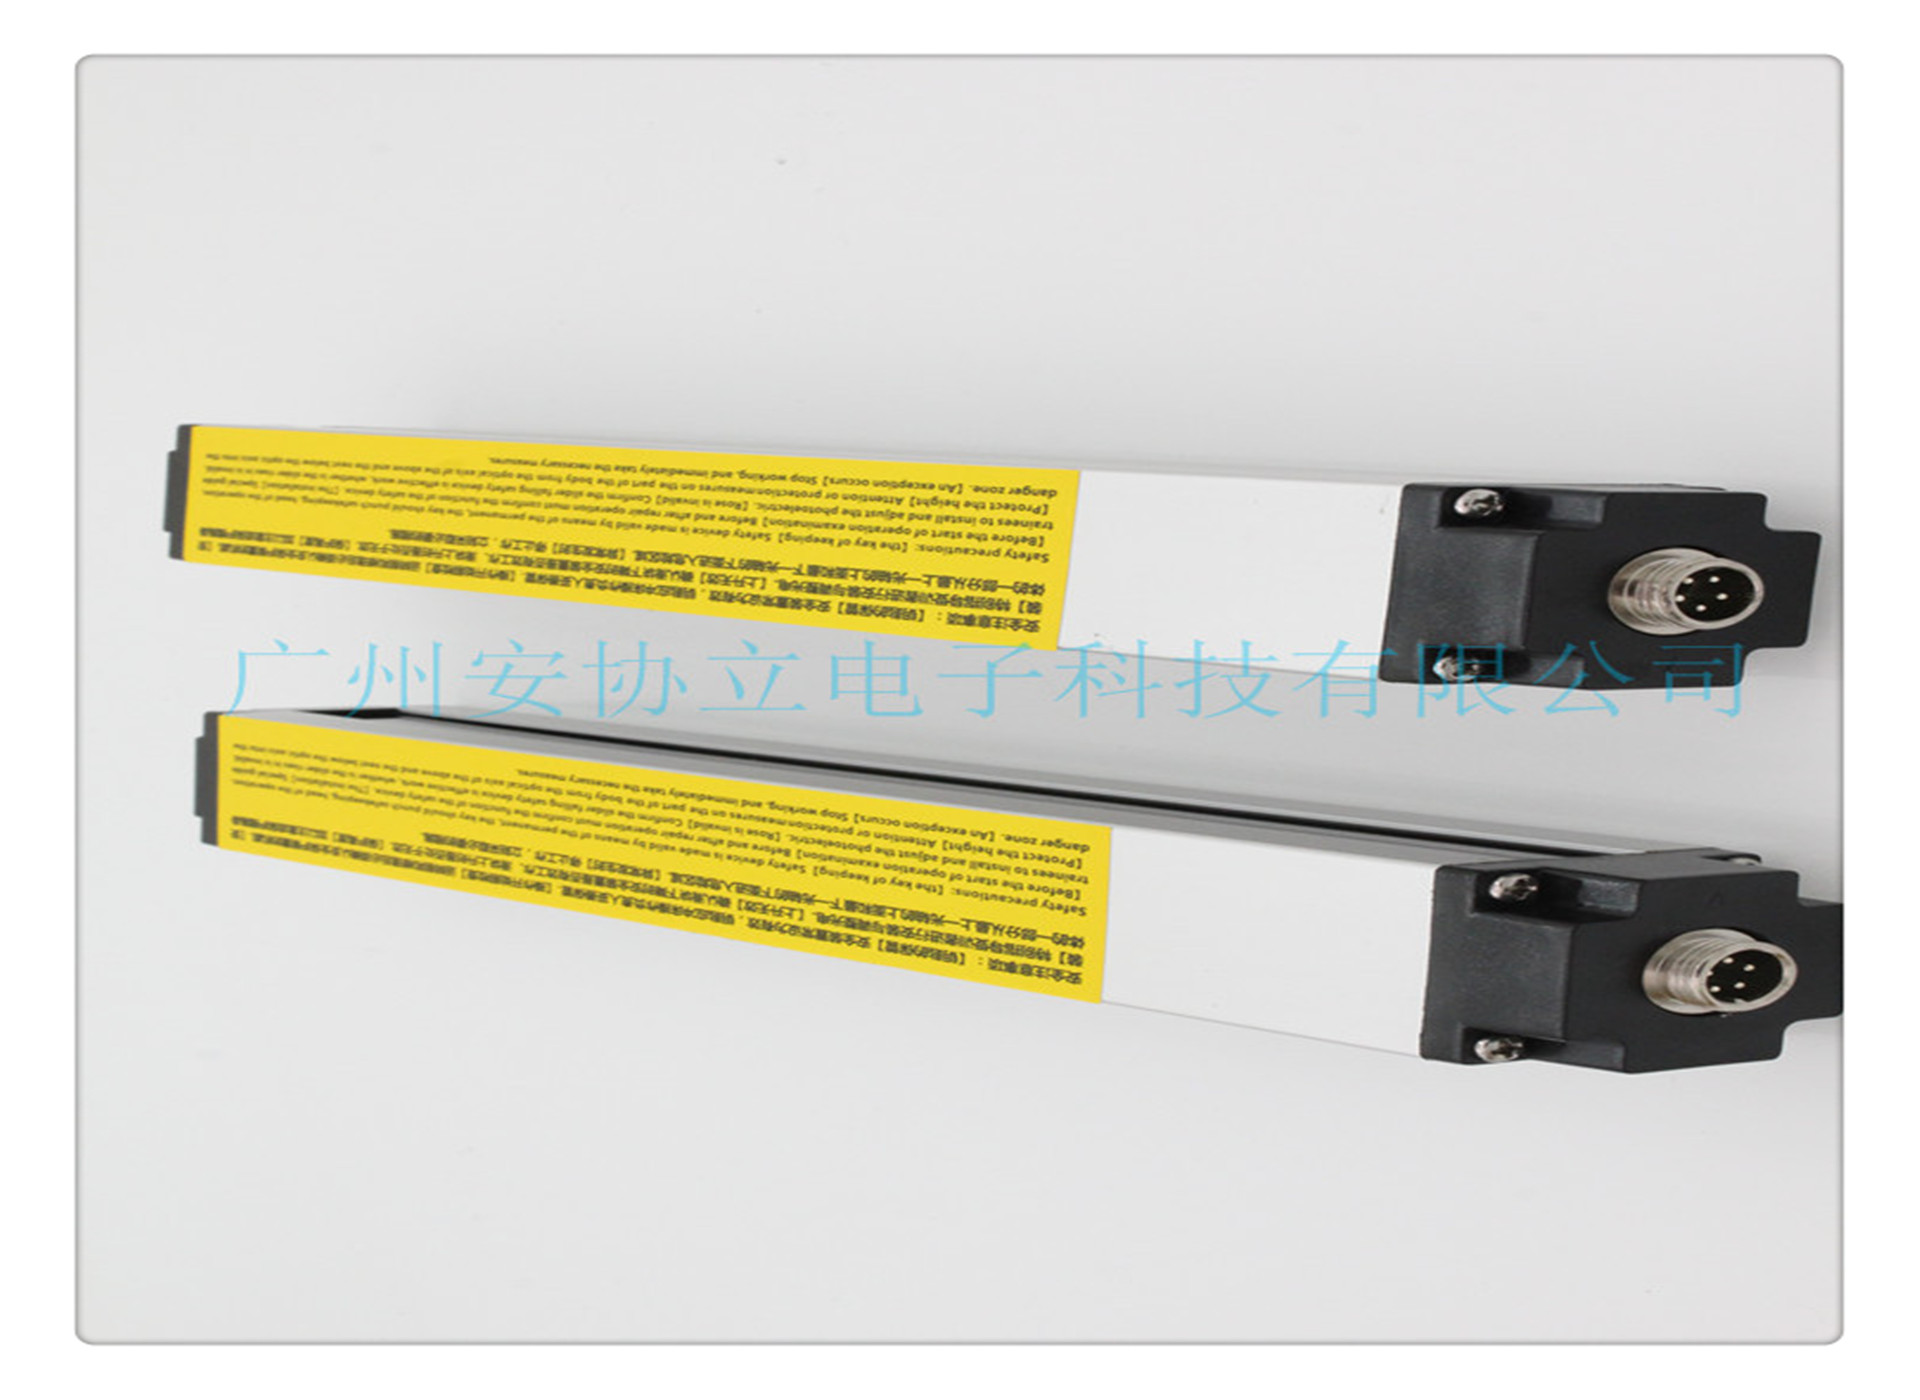 焊接设备专用安全光栅HNG-1240红外传感器